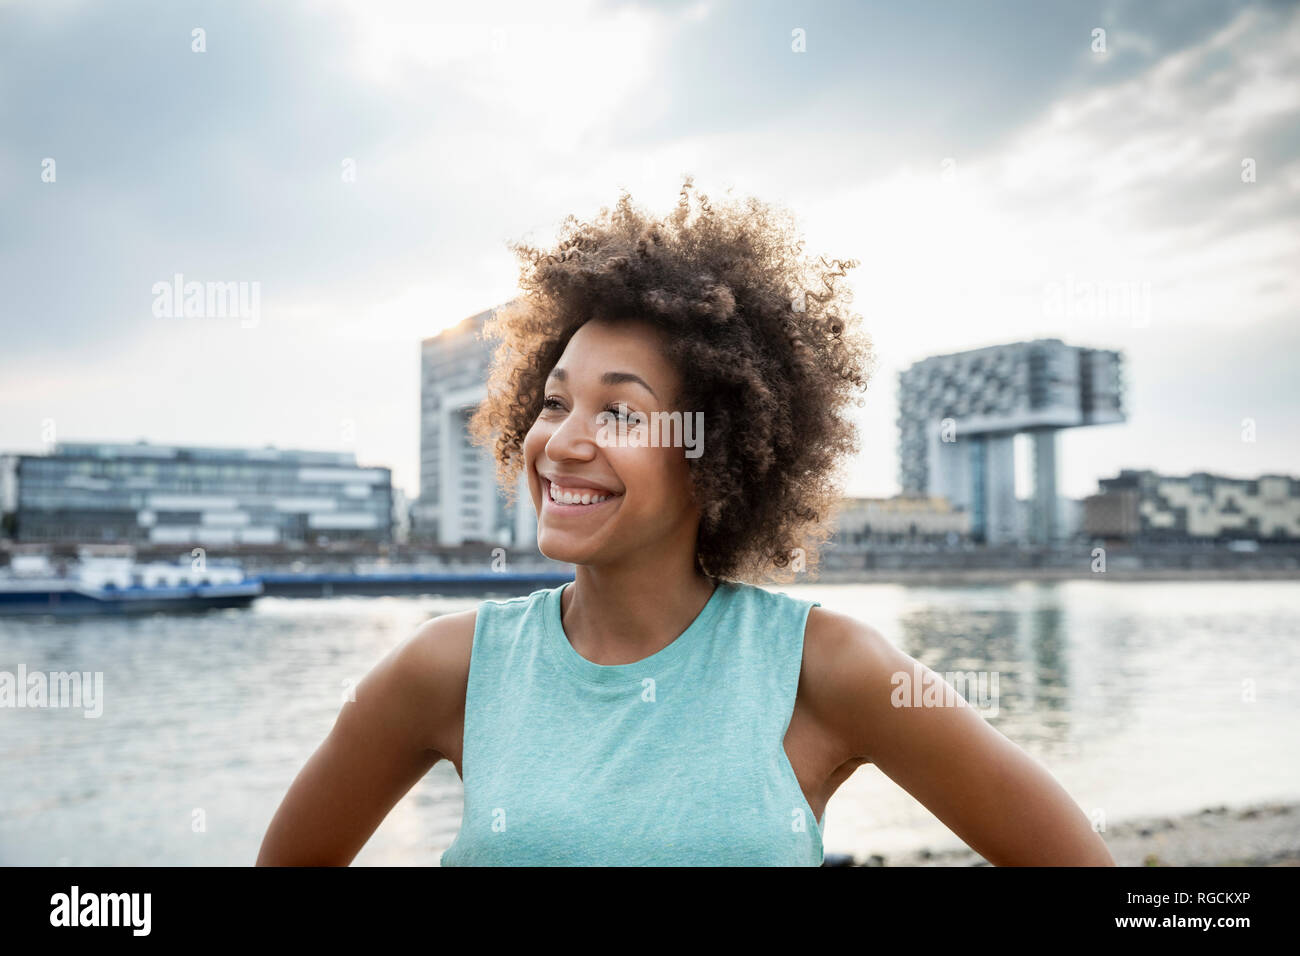 Allemagne, Cologne, portrait de femme heureuse au bord du Rhin Banque D'Images